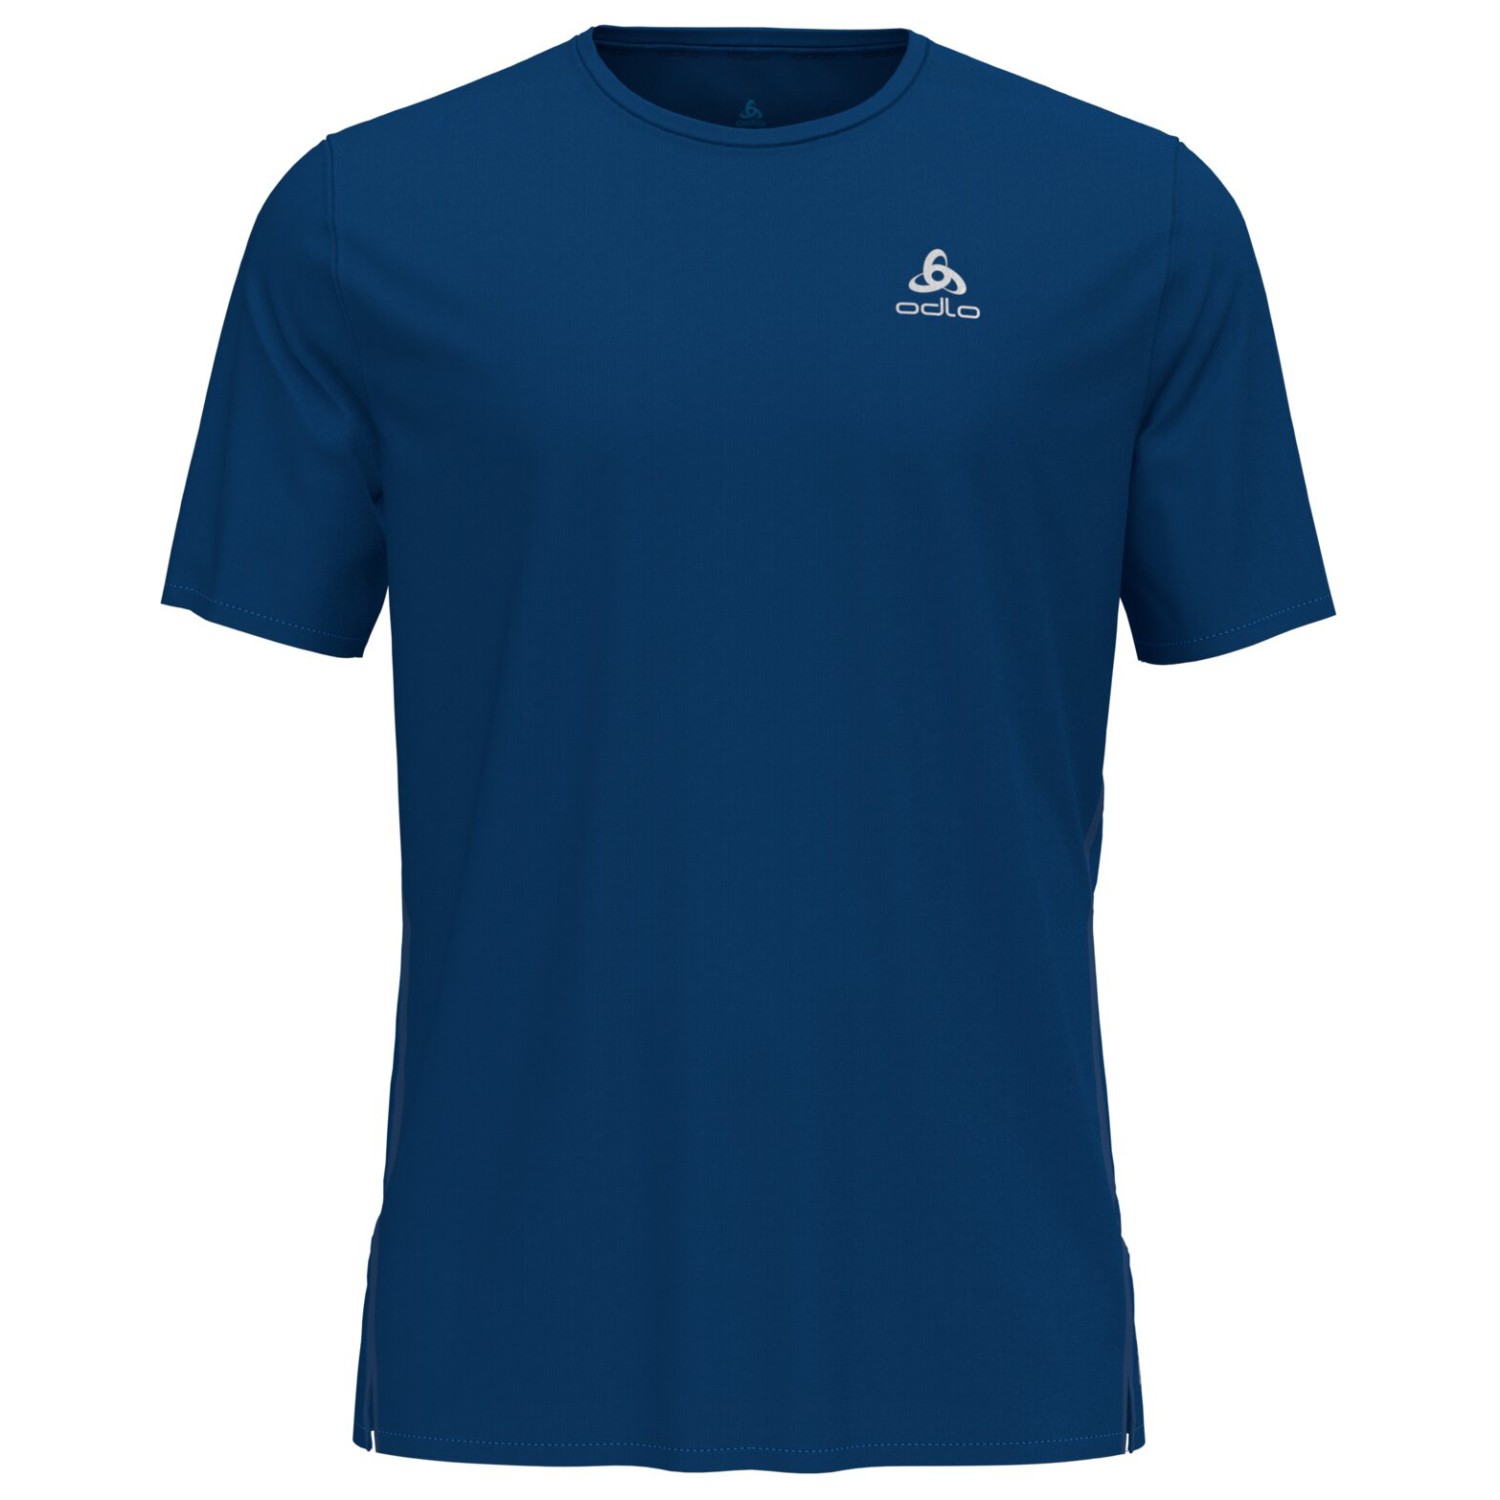 Беговая рубашка Odlo T Shirt S/S Crew Neck Zeroweight Chill Tec, цвет Limoges цена и фото